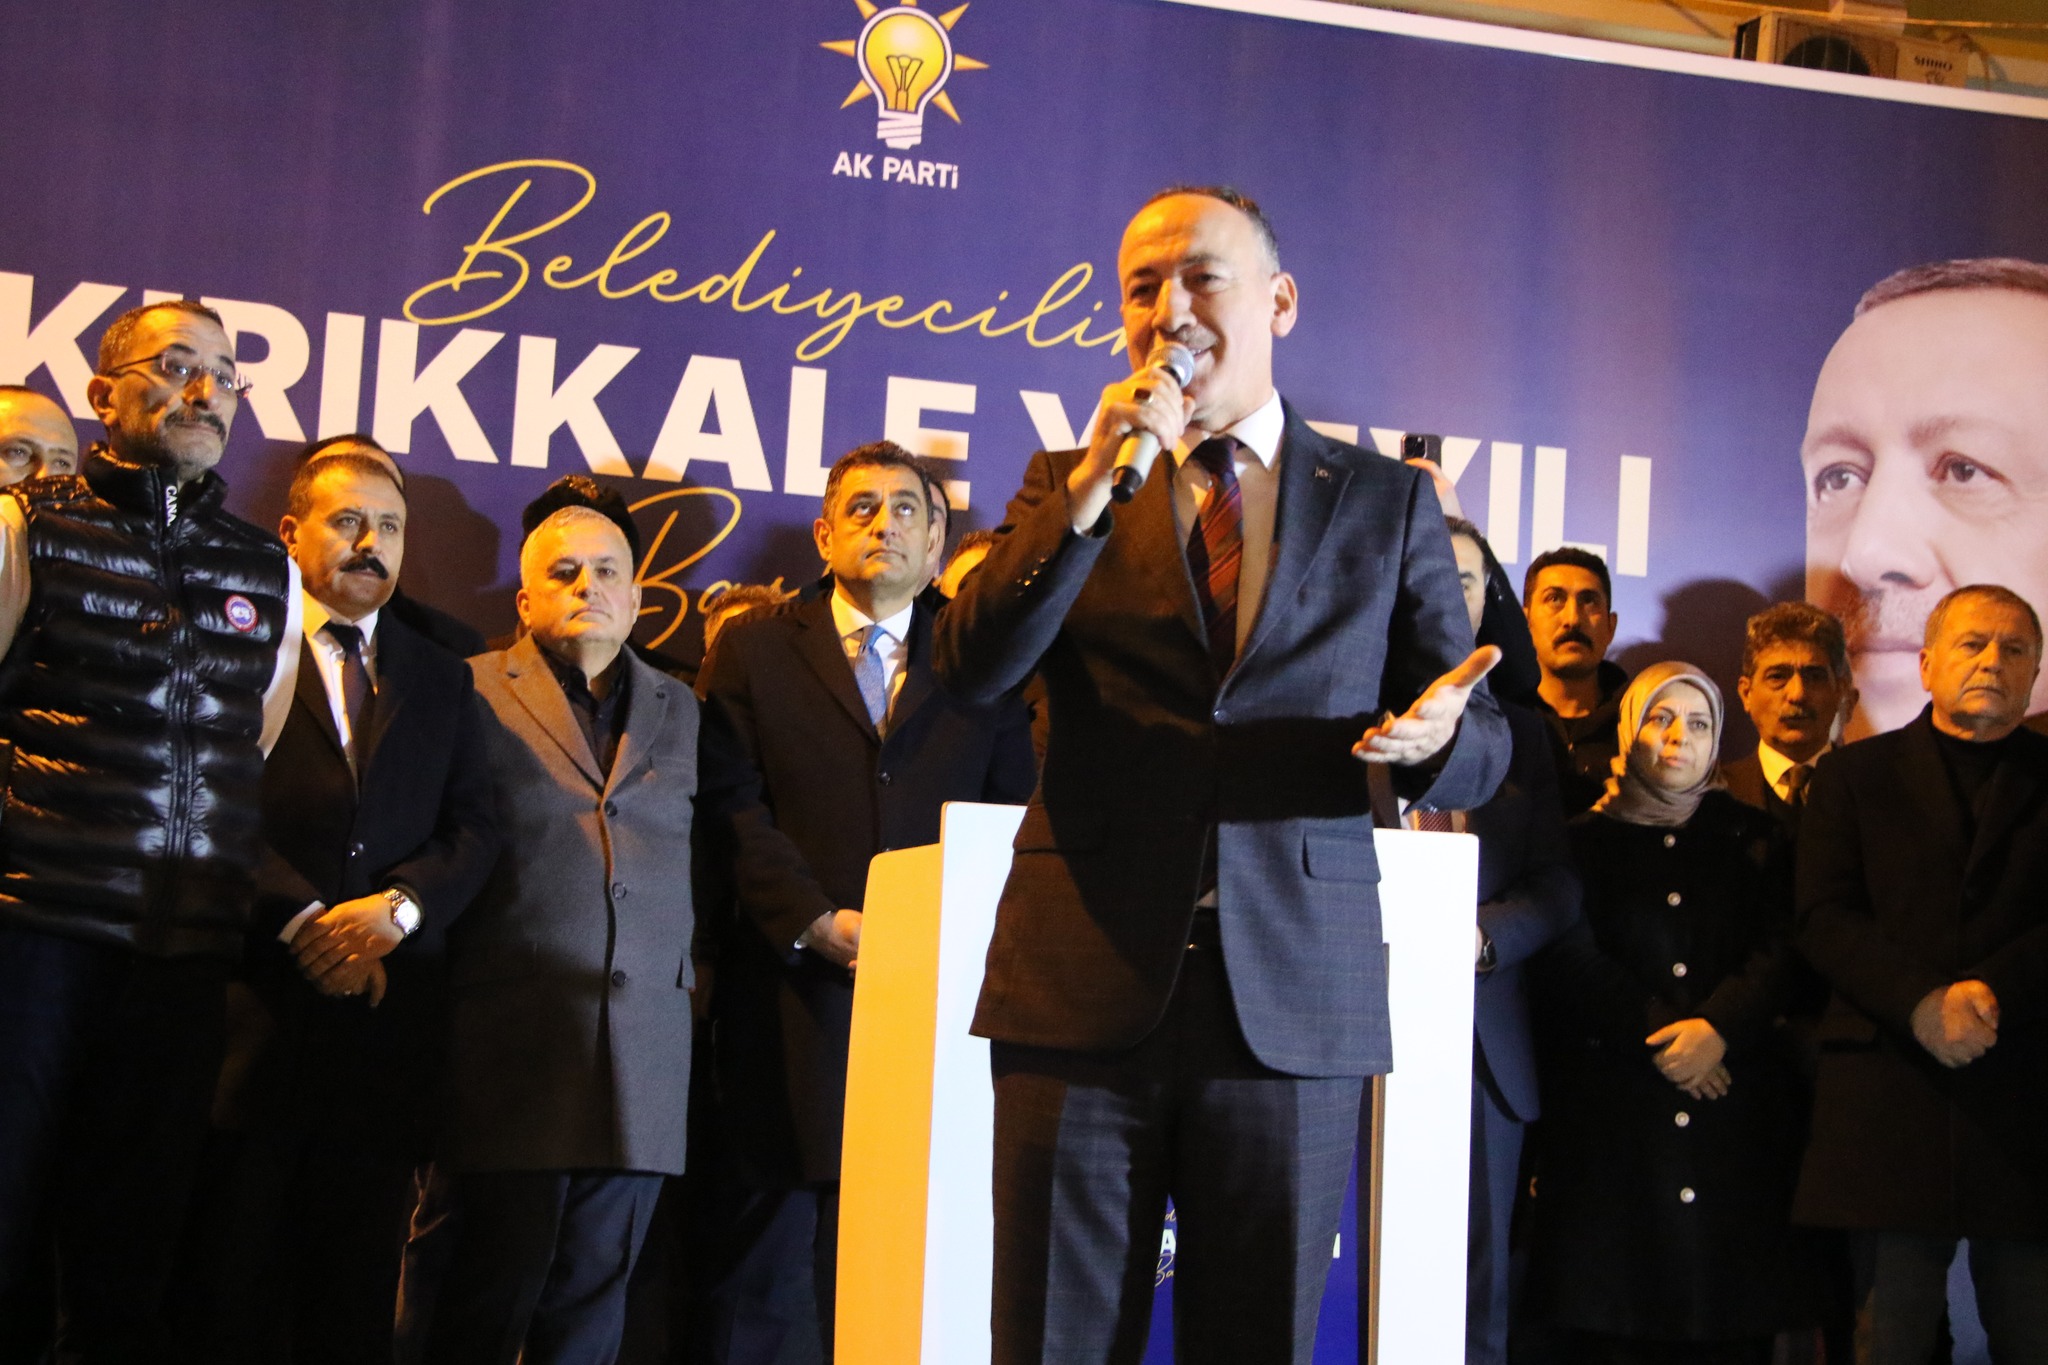 mehmet-saygili-ak-parti-kirikkale-belediye-baskan-adayi-karsilama-9 AK Parti Kırıkkale Belediye Başkanı Mehmet Saygılı'ya Coşkulu Karşılama